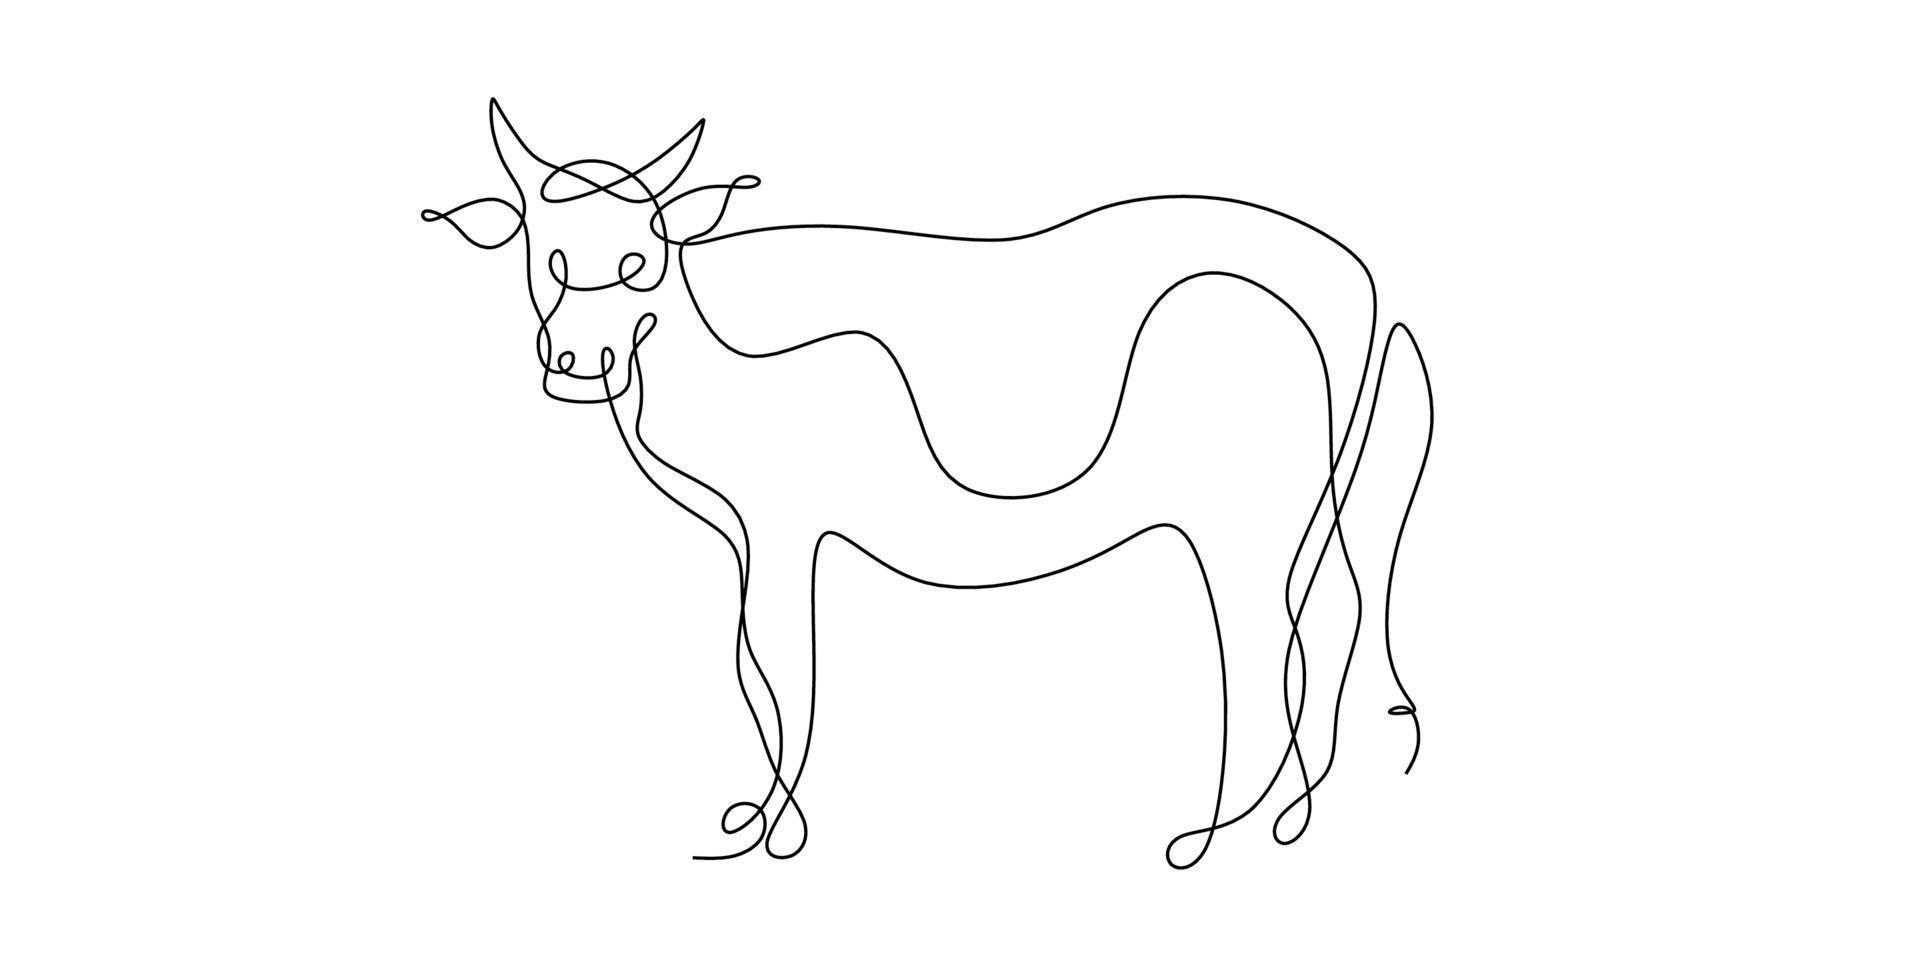 eine durchgehende Strichzeichnung einer einzelnen Rinderlinie. kontinuierliche Linie Stierzeichnung, Symbol von 2021. Jahr des Ochsen gezeichnet in einem isolierten auf weißem Hintergrund. abstrakter Ochse, Stier oder Kuh. vektor